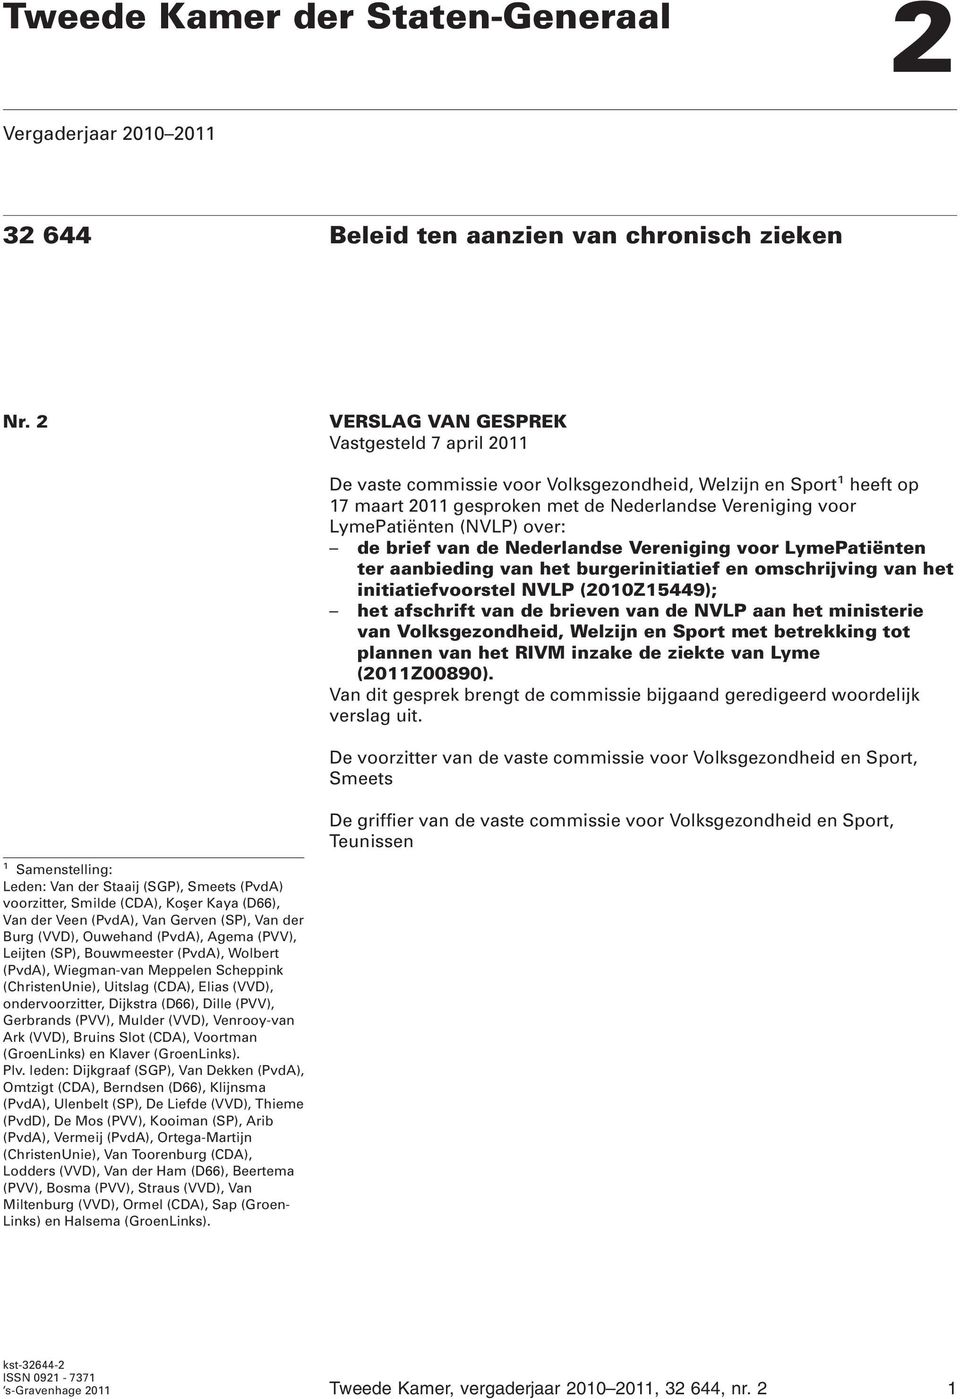 over: de brief van de Nederlandse Vereniging voor LymePatiënten ter aanbieding van het burgerinitiatief en omschrijving van het initiatiefvoorstel NVLP (2010Z15449); het afschrift van de brieven van